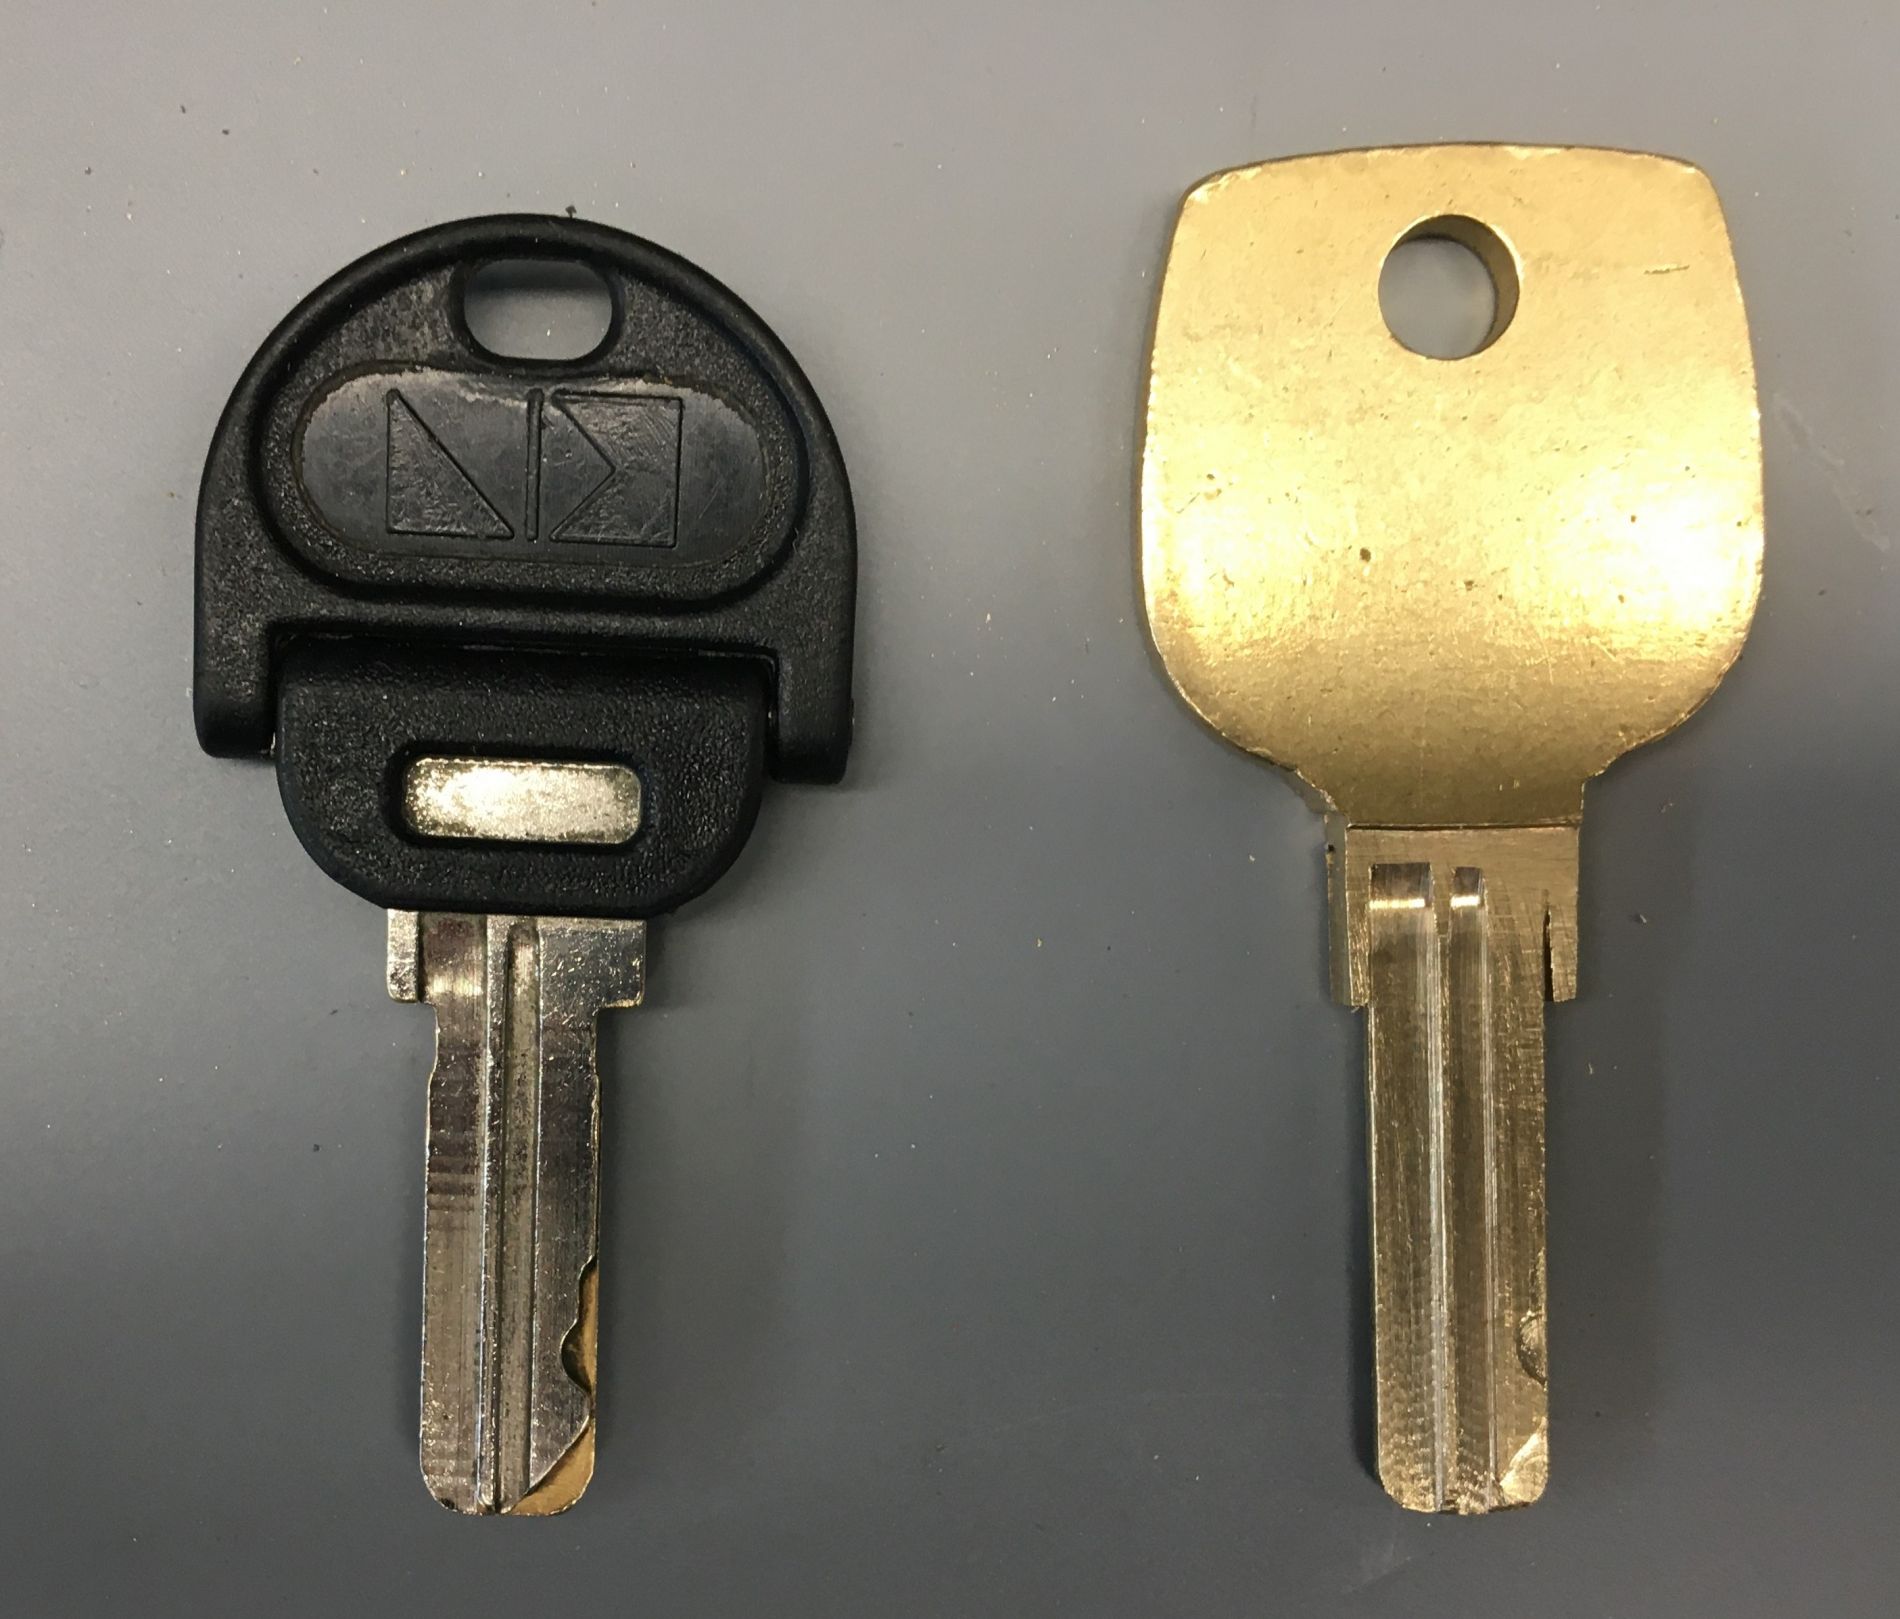 Frezowanie surowca klucza otwierającego szafkę narzędziową